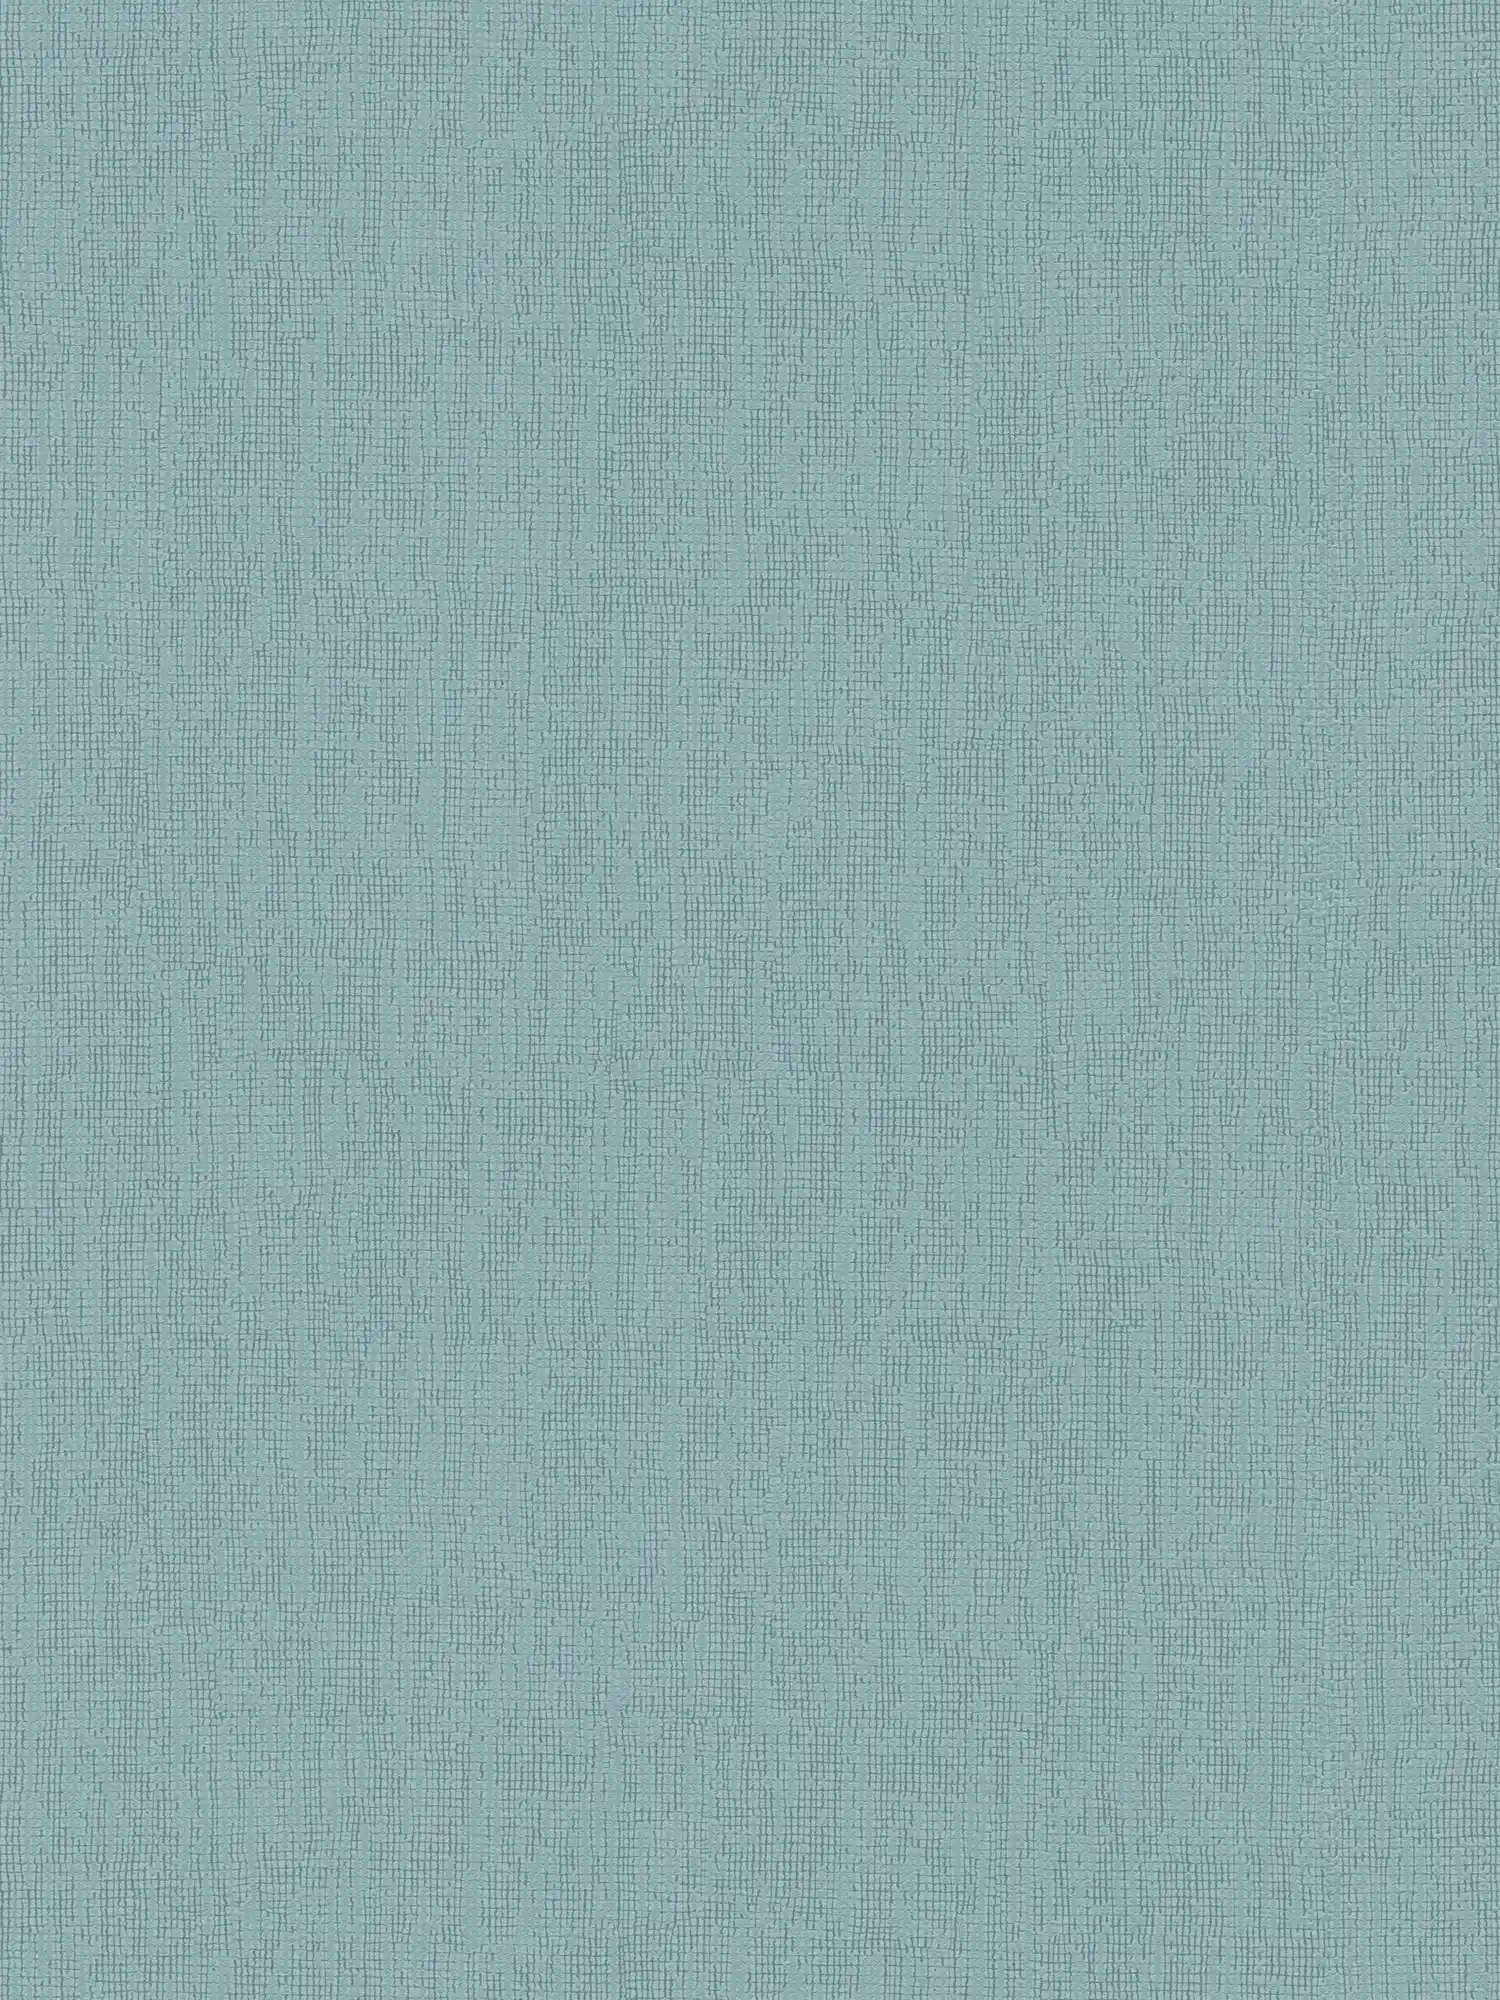 Papel pintado azul claro monocromo con detalles de textura, estilo escandinavo
